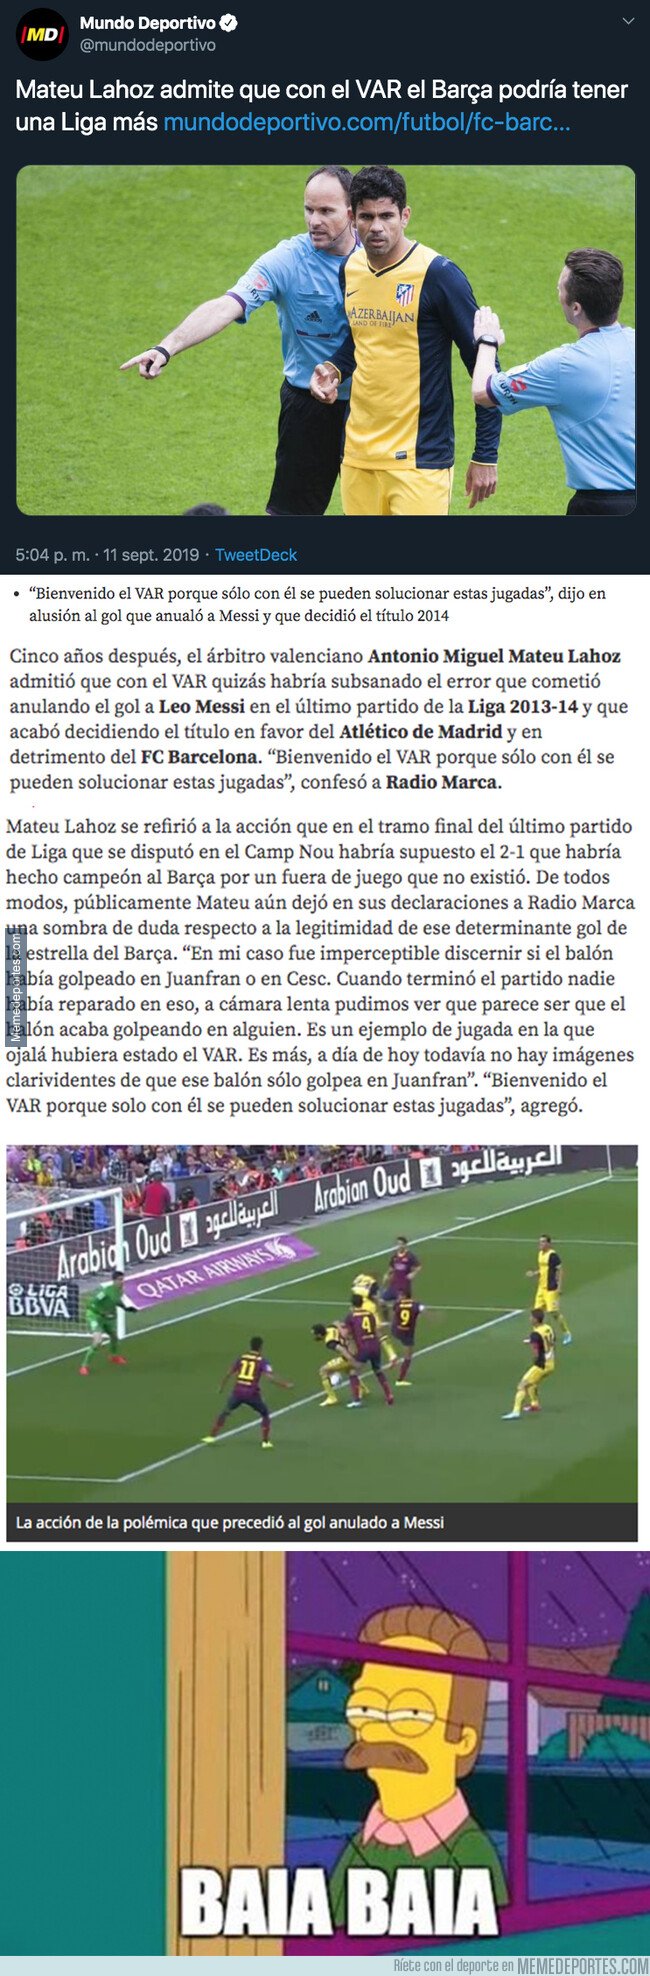 1085577 - Escándalo: Esto explica Mateu Lahoz sobre el título de Liga que ganó el Atlético de Madrid frente al Barça en la última jornada